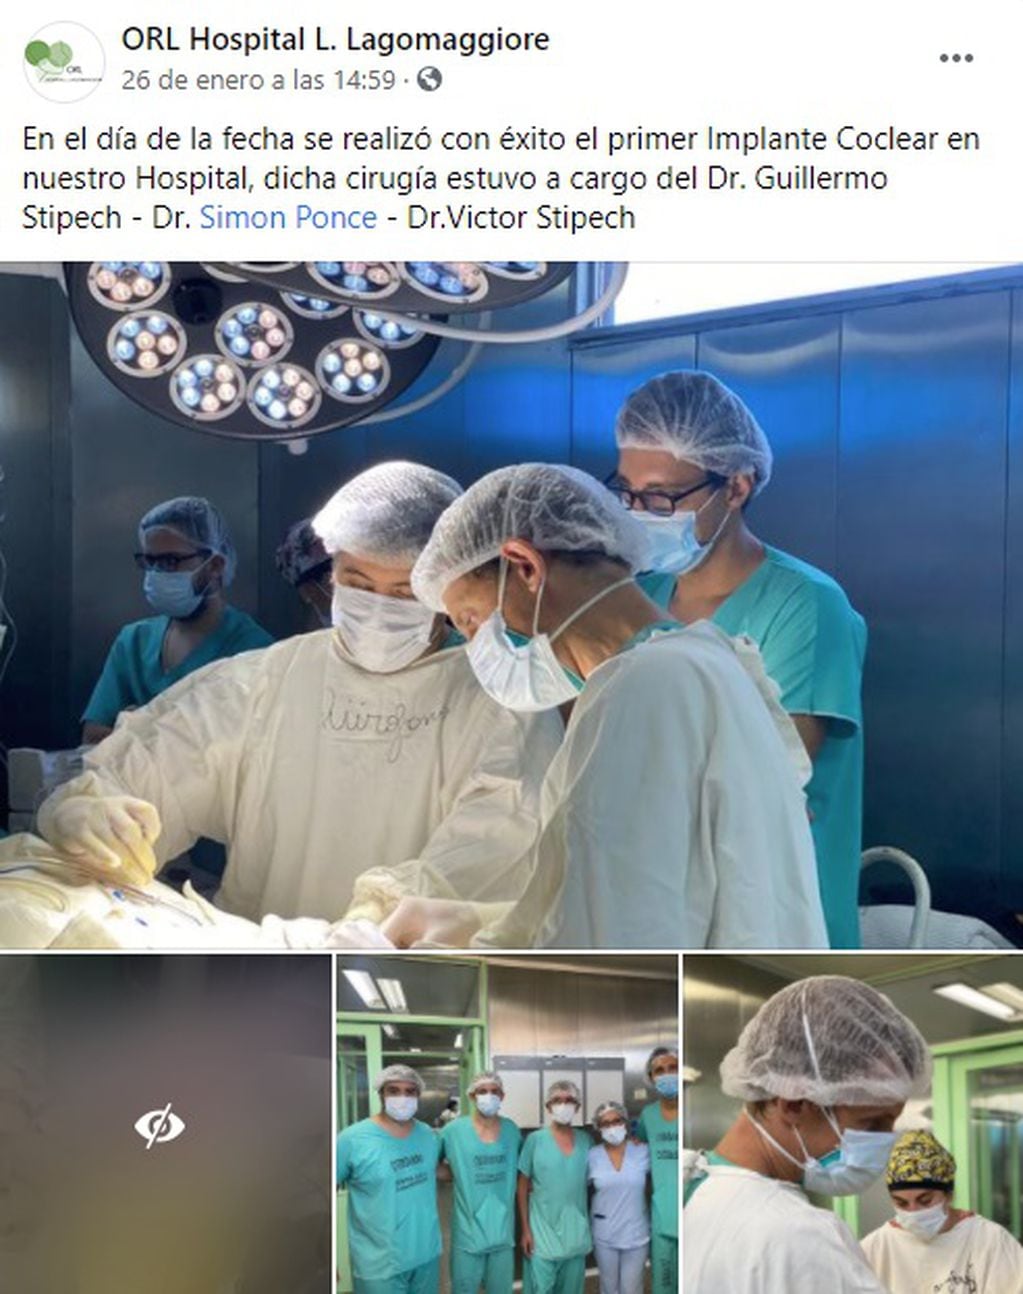 El equipo estuvo integrado por los cirujanos Simón Ponce, Eduardo Di Filippo, Guillermo Stipech, Víctor
Stipech y fue supervisado por el jefe de Servicio de Otorrinonaringología, Julio Cacciavillani.